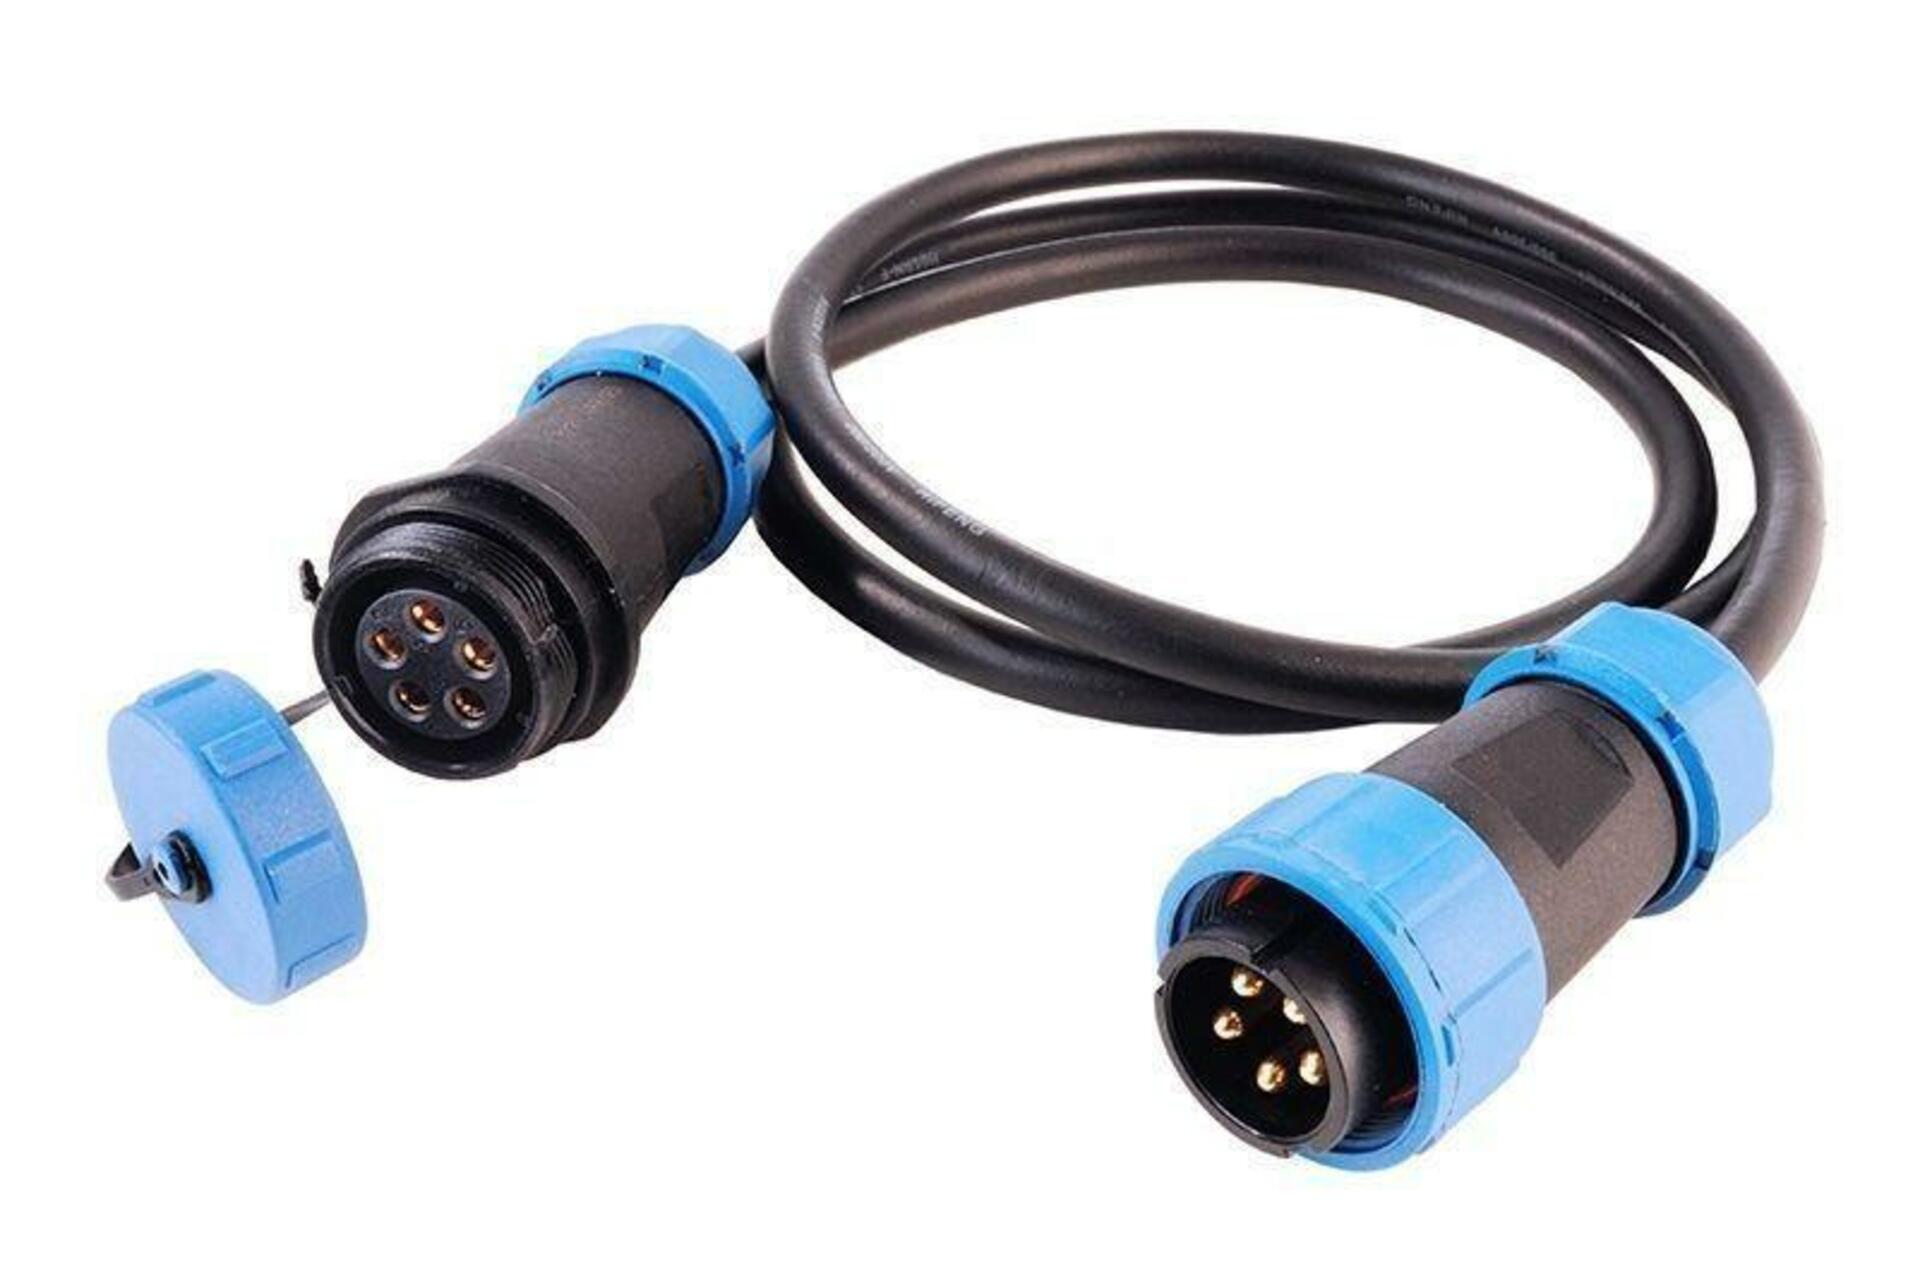 Light Impressions Deko-Light Weipu HQ 12/24/48V spojovací kabel 5-pólový kabelový systém5000 mm 940043